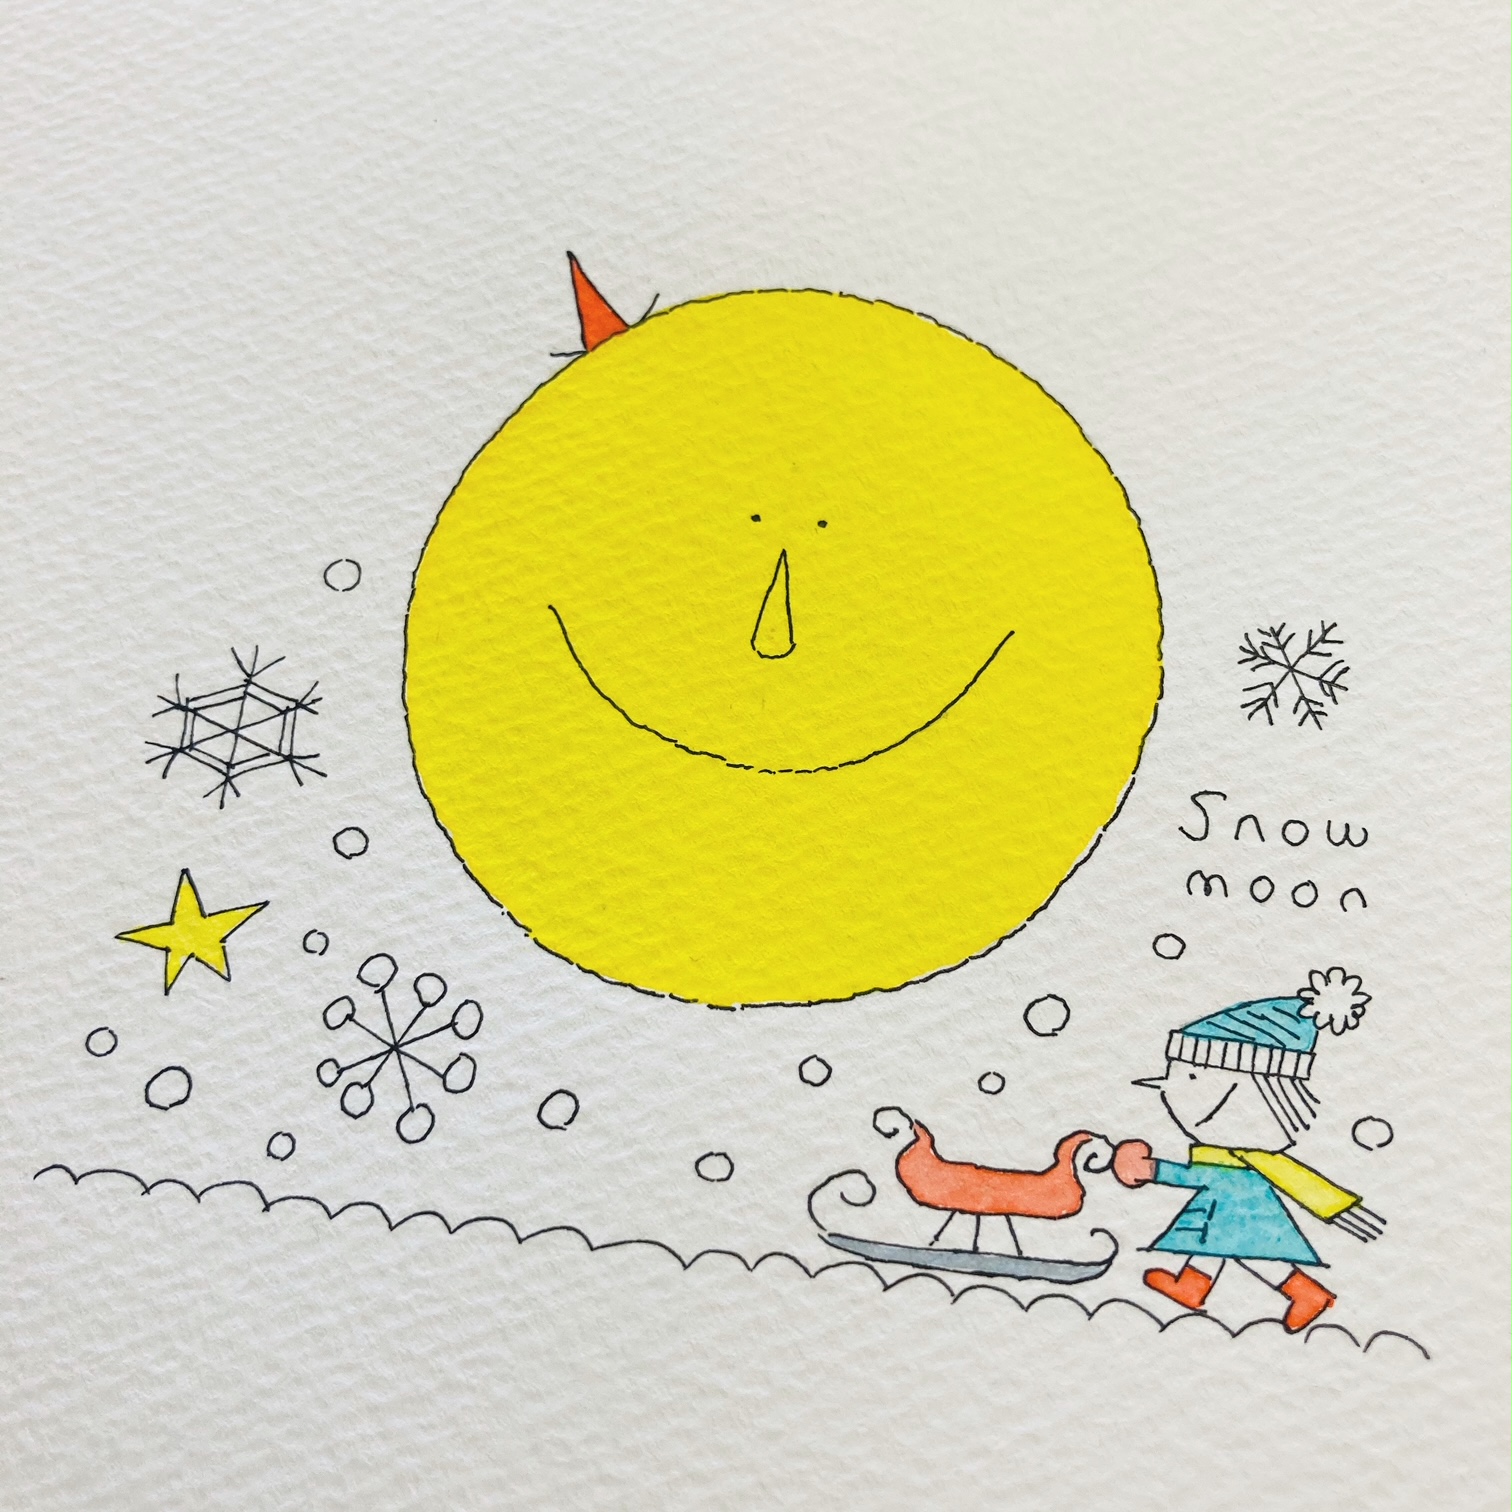 カワチ レン 今夜は満月 2月の満月はスノームーン きれいに見えるといいな 来週いよいよ 満月の原画の額装をお願いします 日めくりカレンダー ふわはね日めくりカレンダー ふわはねehon Fuwahane 絵本 スノームーン ニジノ絵本屋 イラスト